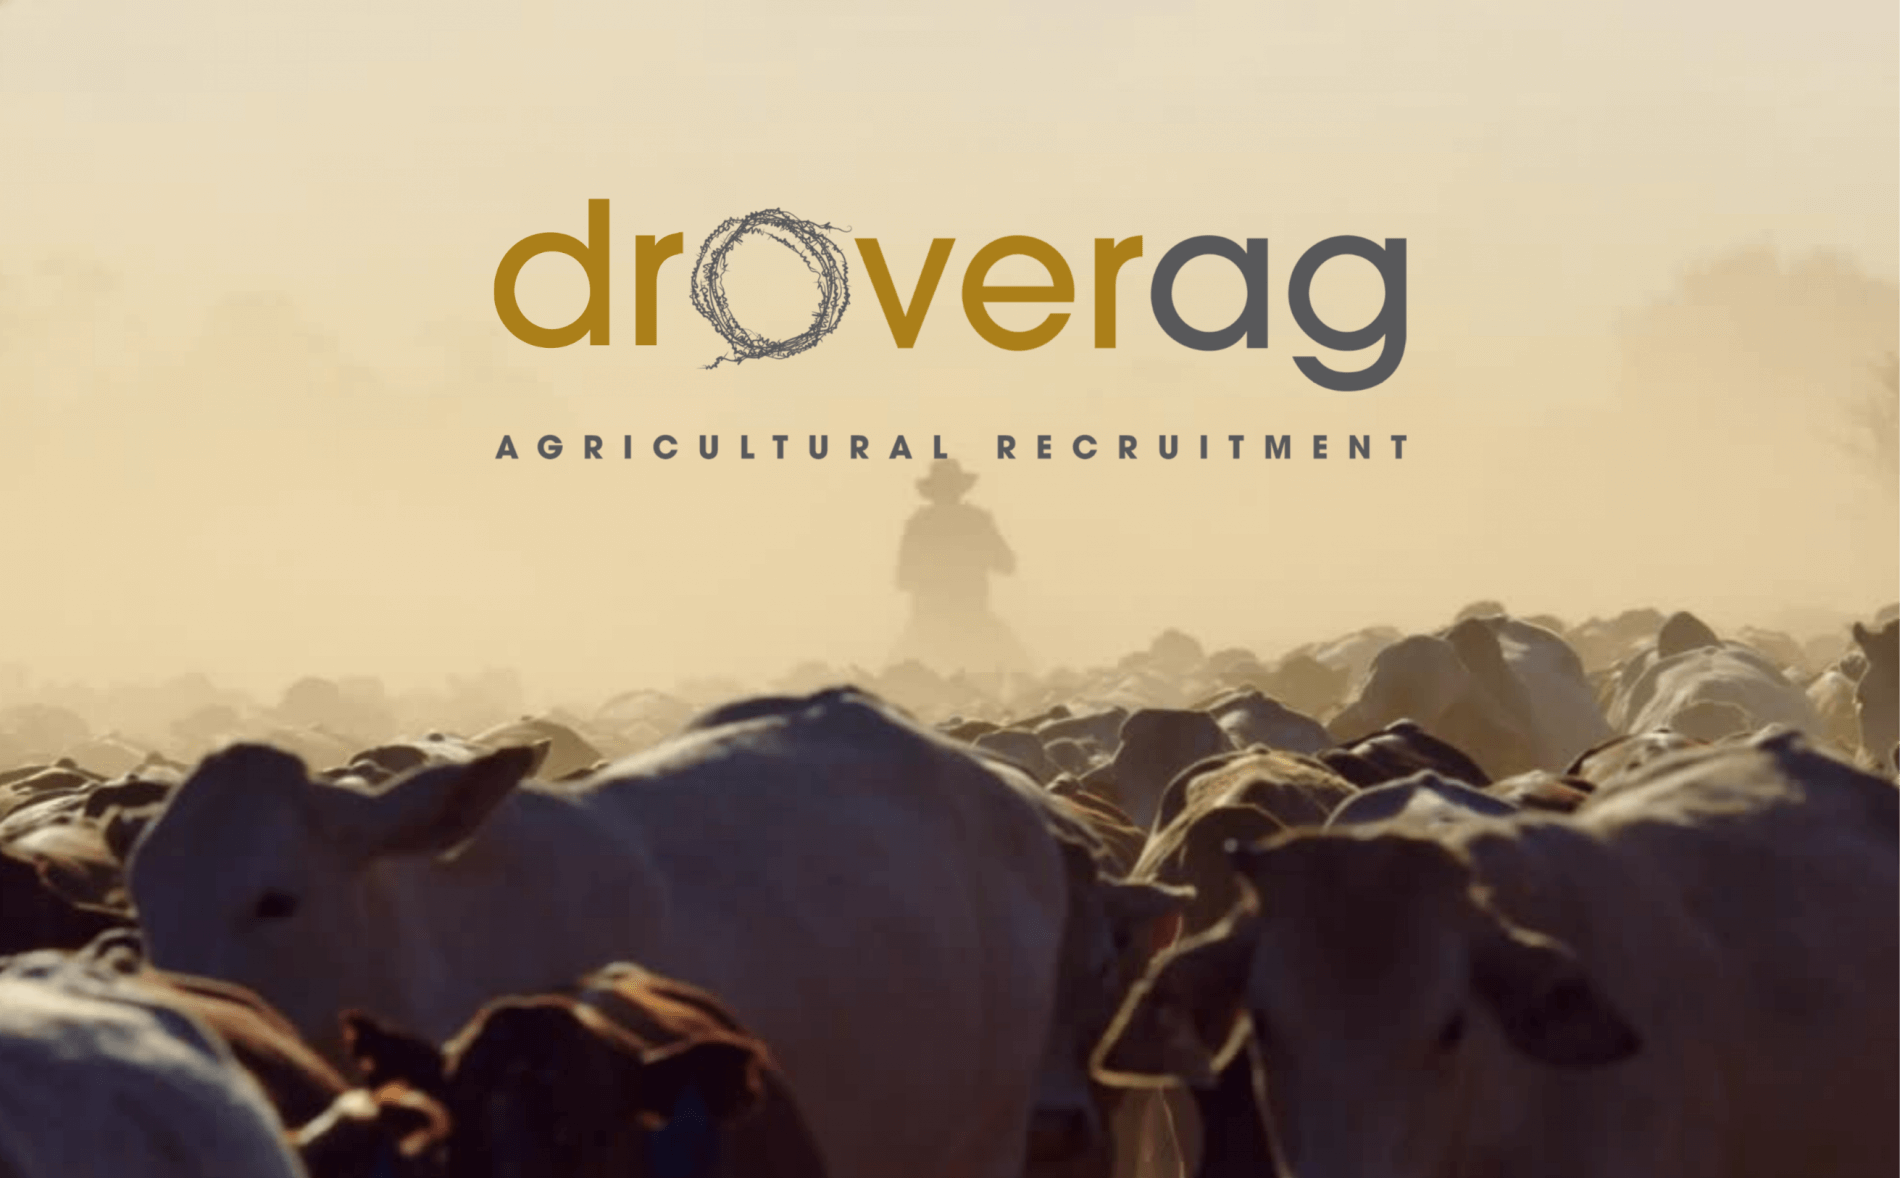 Drover AG logo